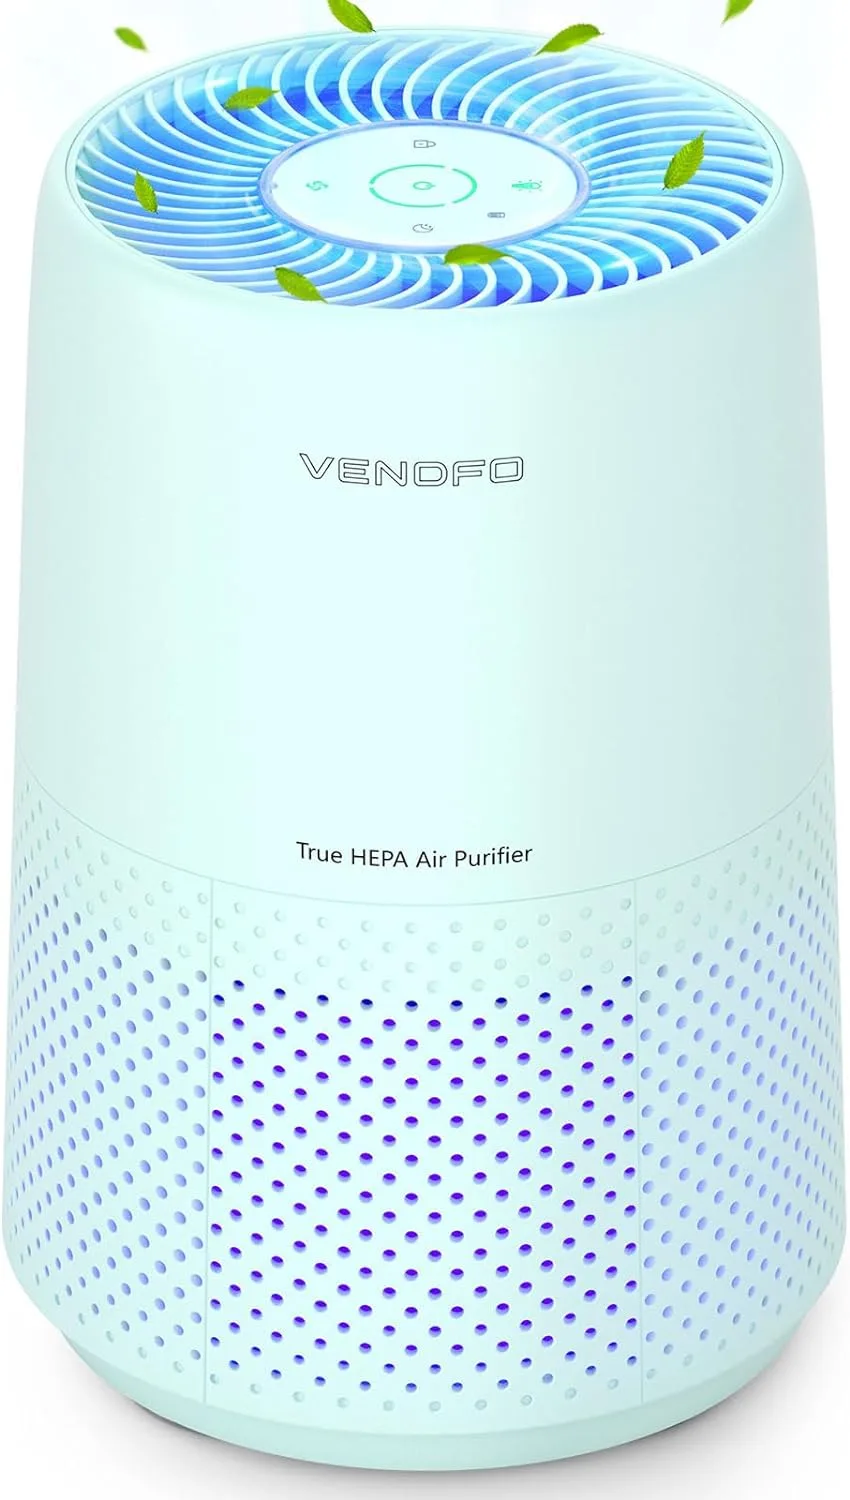 VENDFO Air Purifier Review